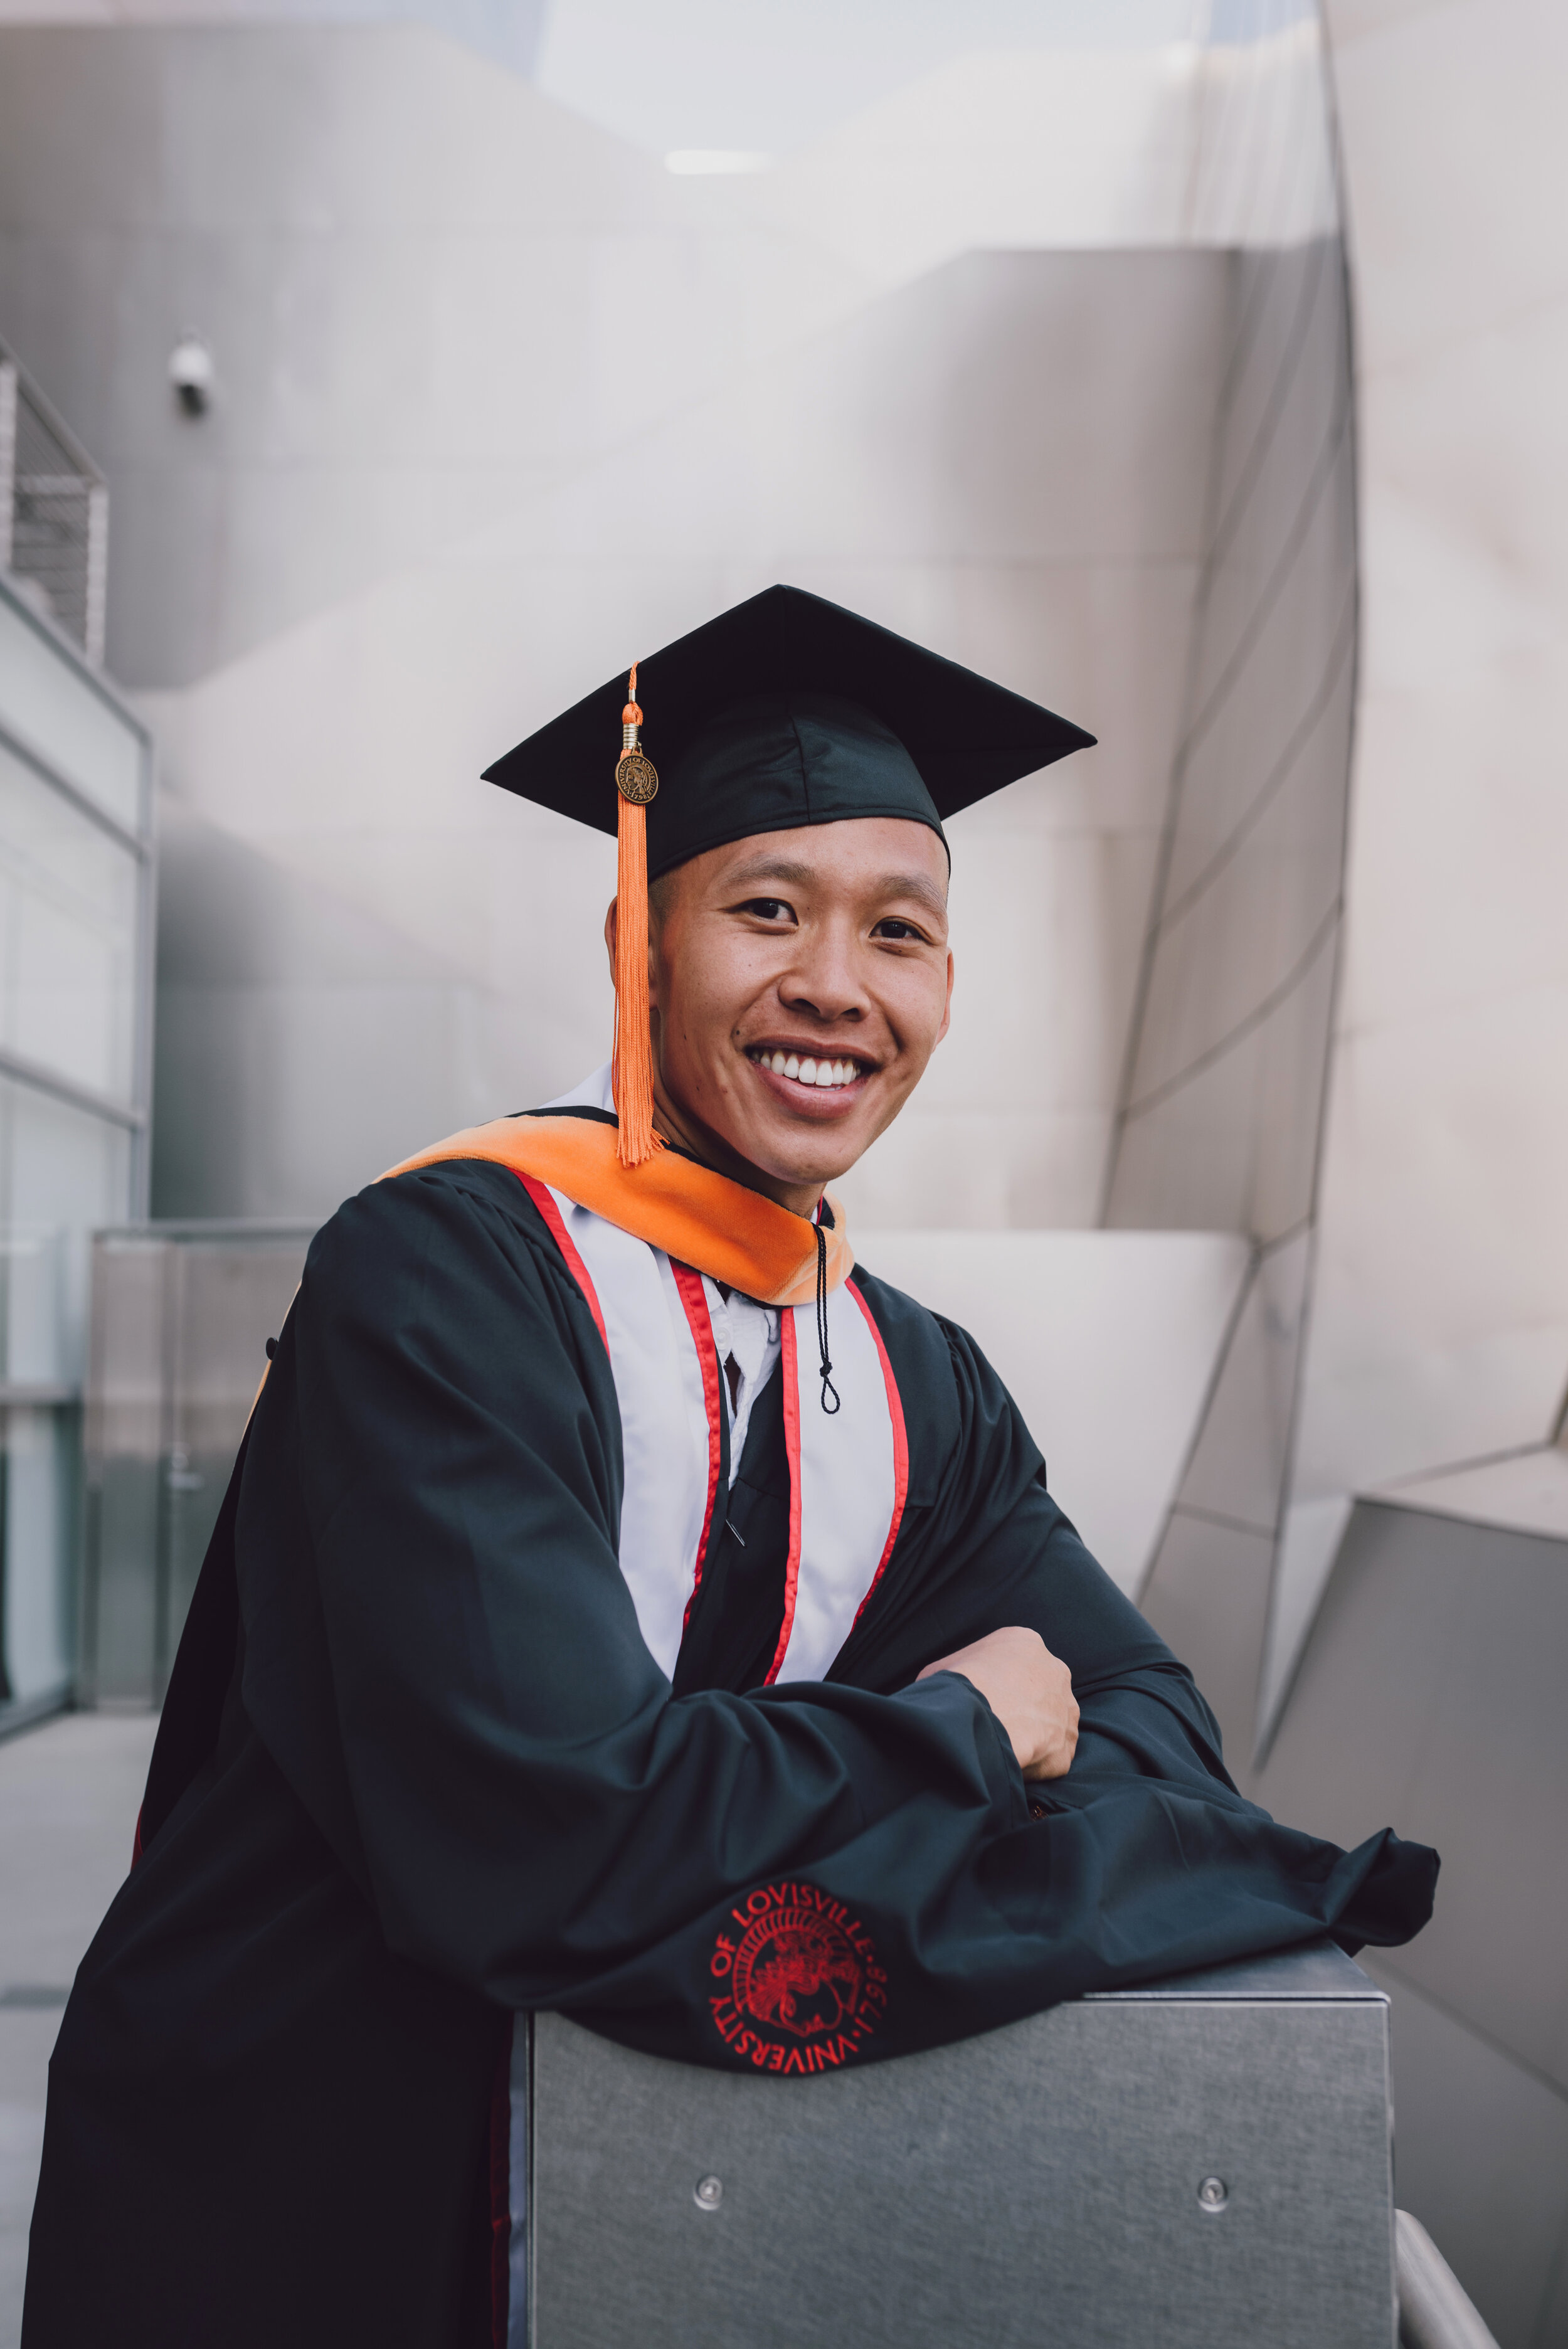 LosAngeles-Graduation-Portrait-Photographer-5.jpg